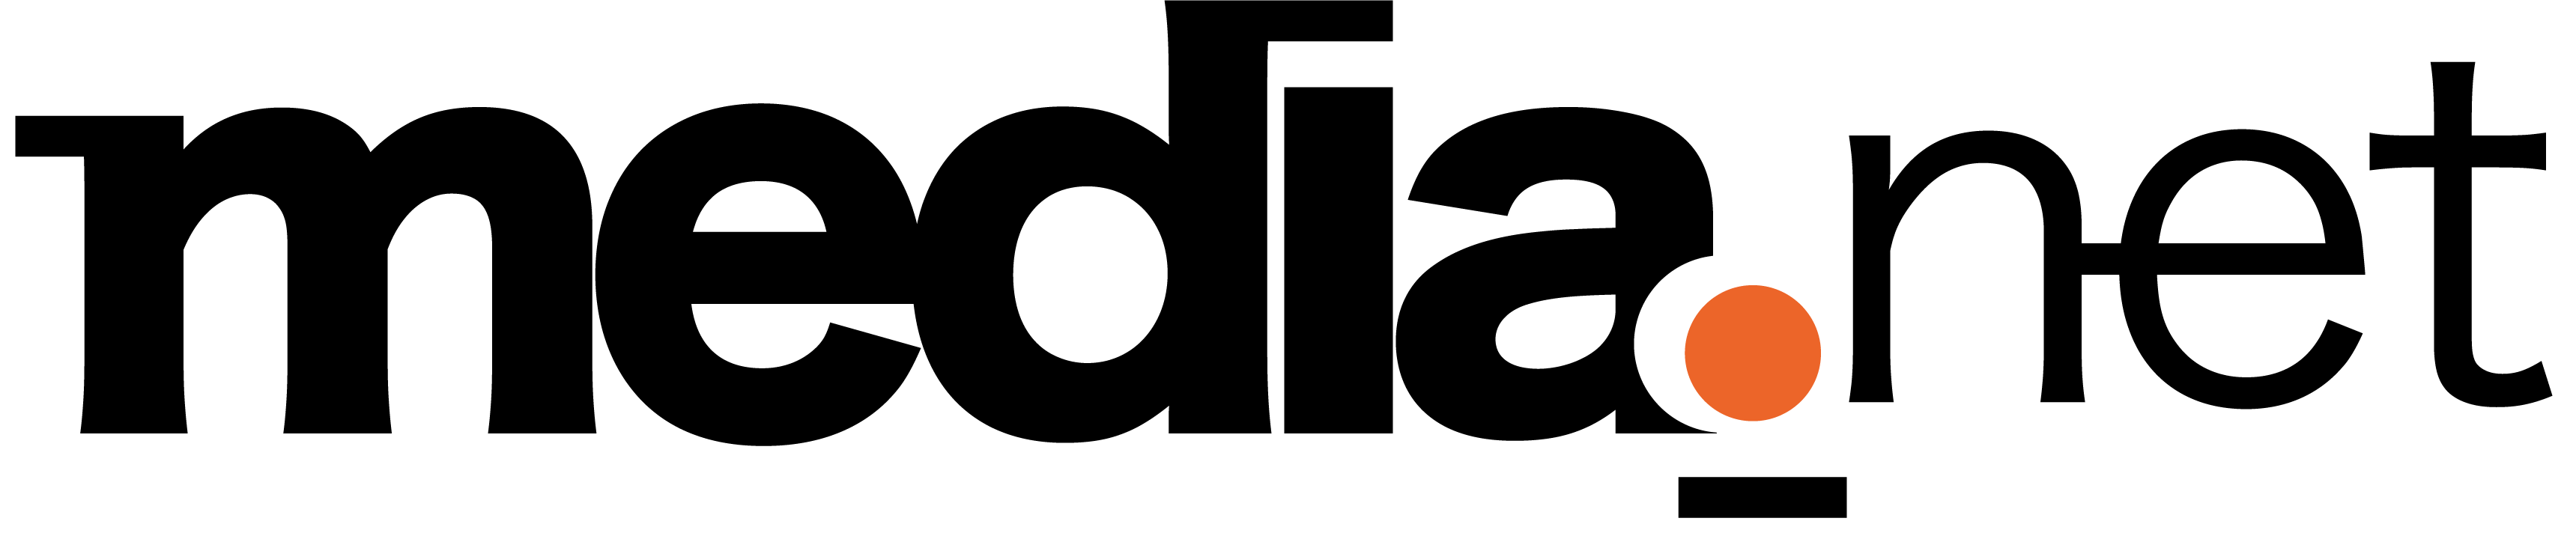 Media-Net-Logo